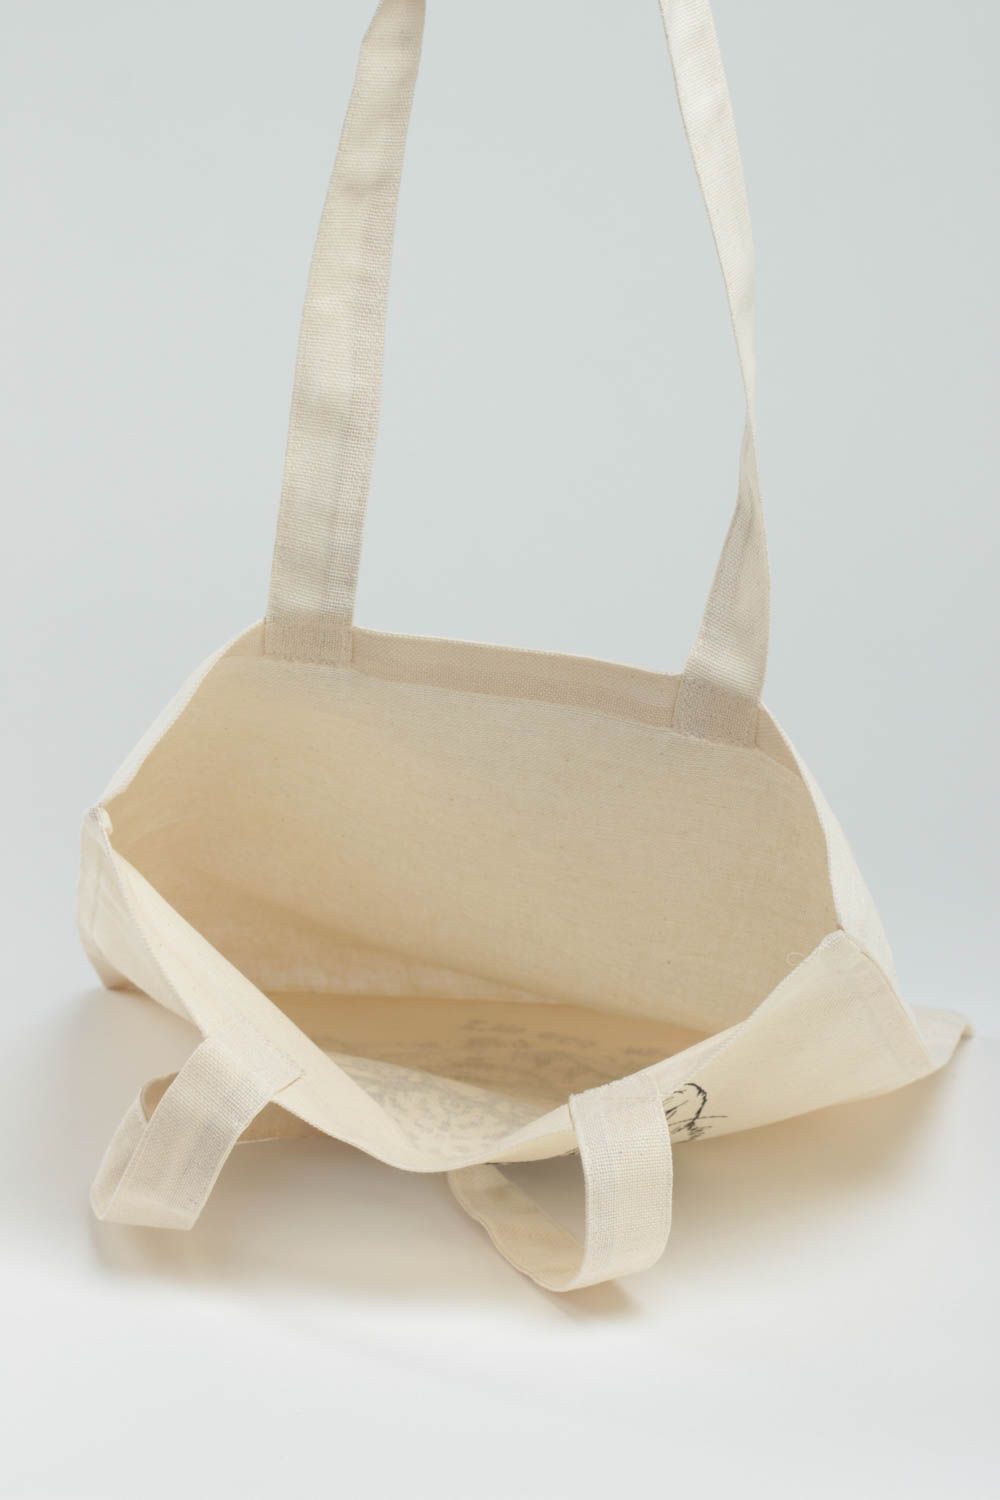 Öko Handtasche aus Stoff mit Bemalung originell schön handmade Accessoire  foto 4